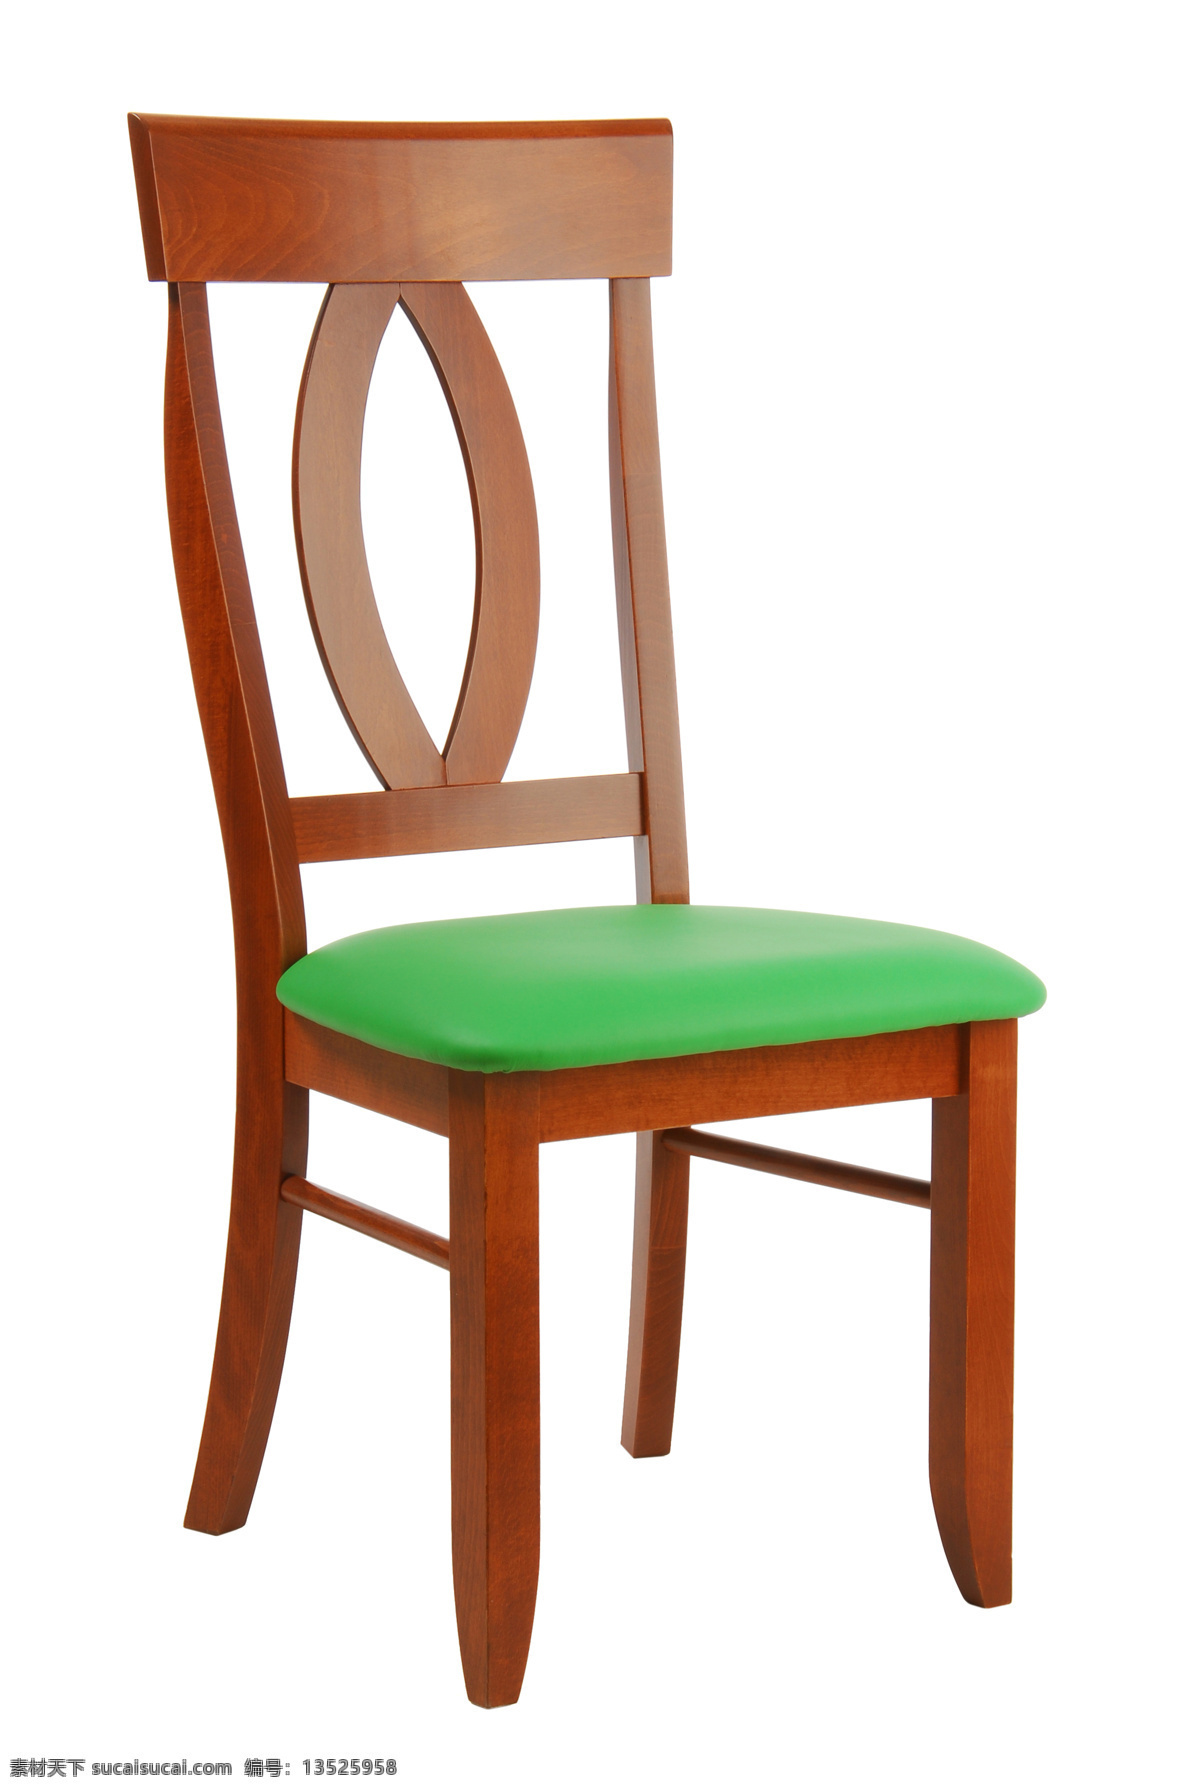 木靠背椅子 木椅子 椅子 凳子 家具 木制家具 靠背椅 沙发 家具电器 生活百科 白色